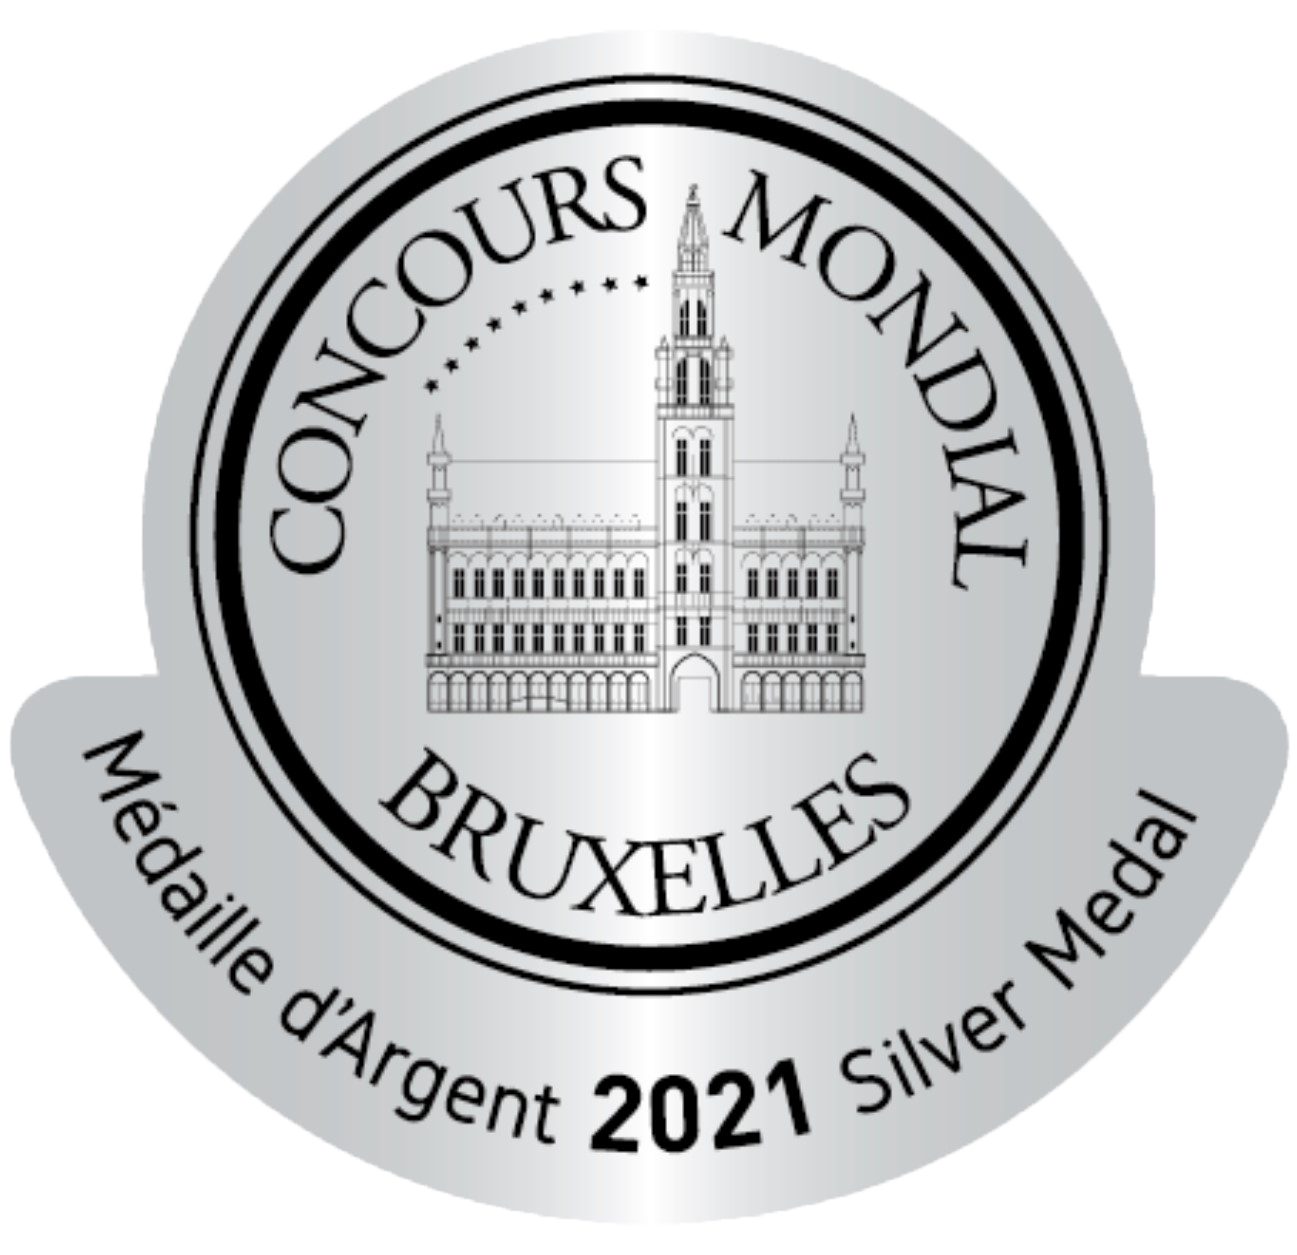 PLATA Concurso Internacional de Bruselas 2021